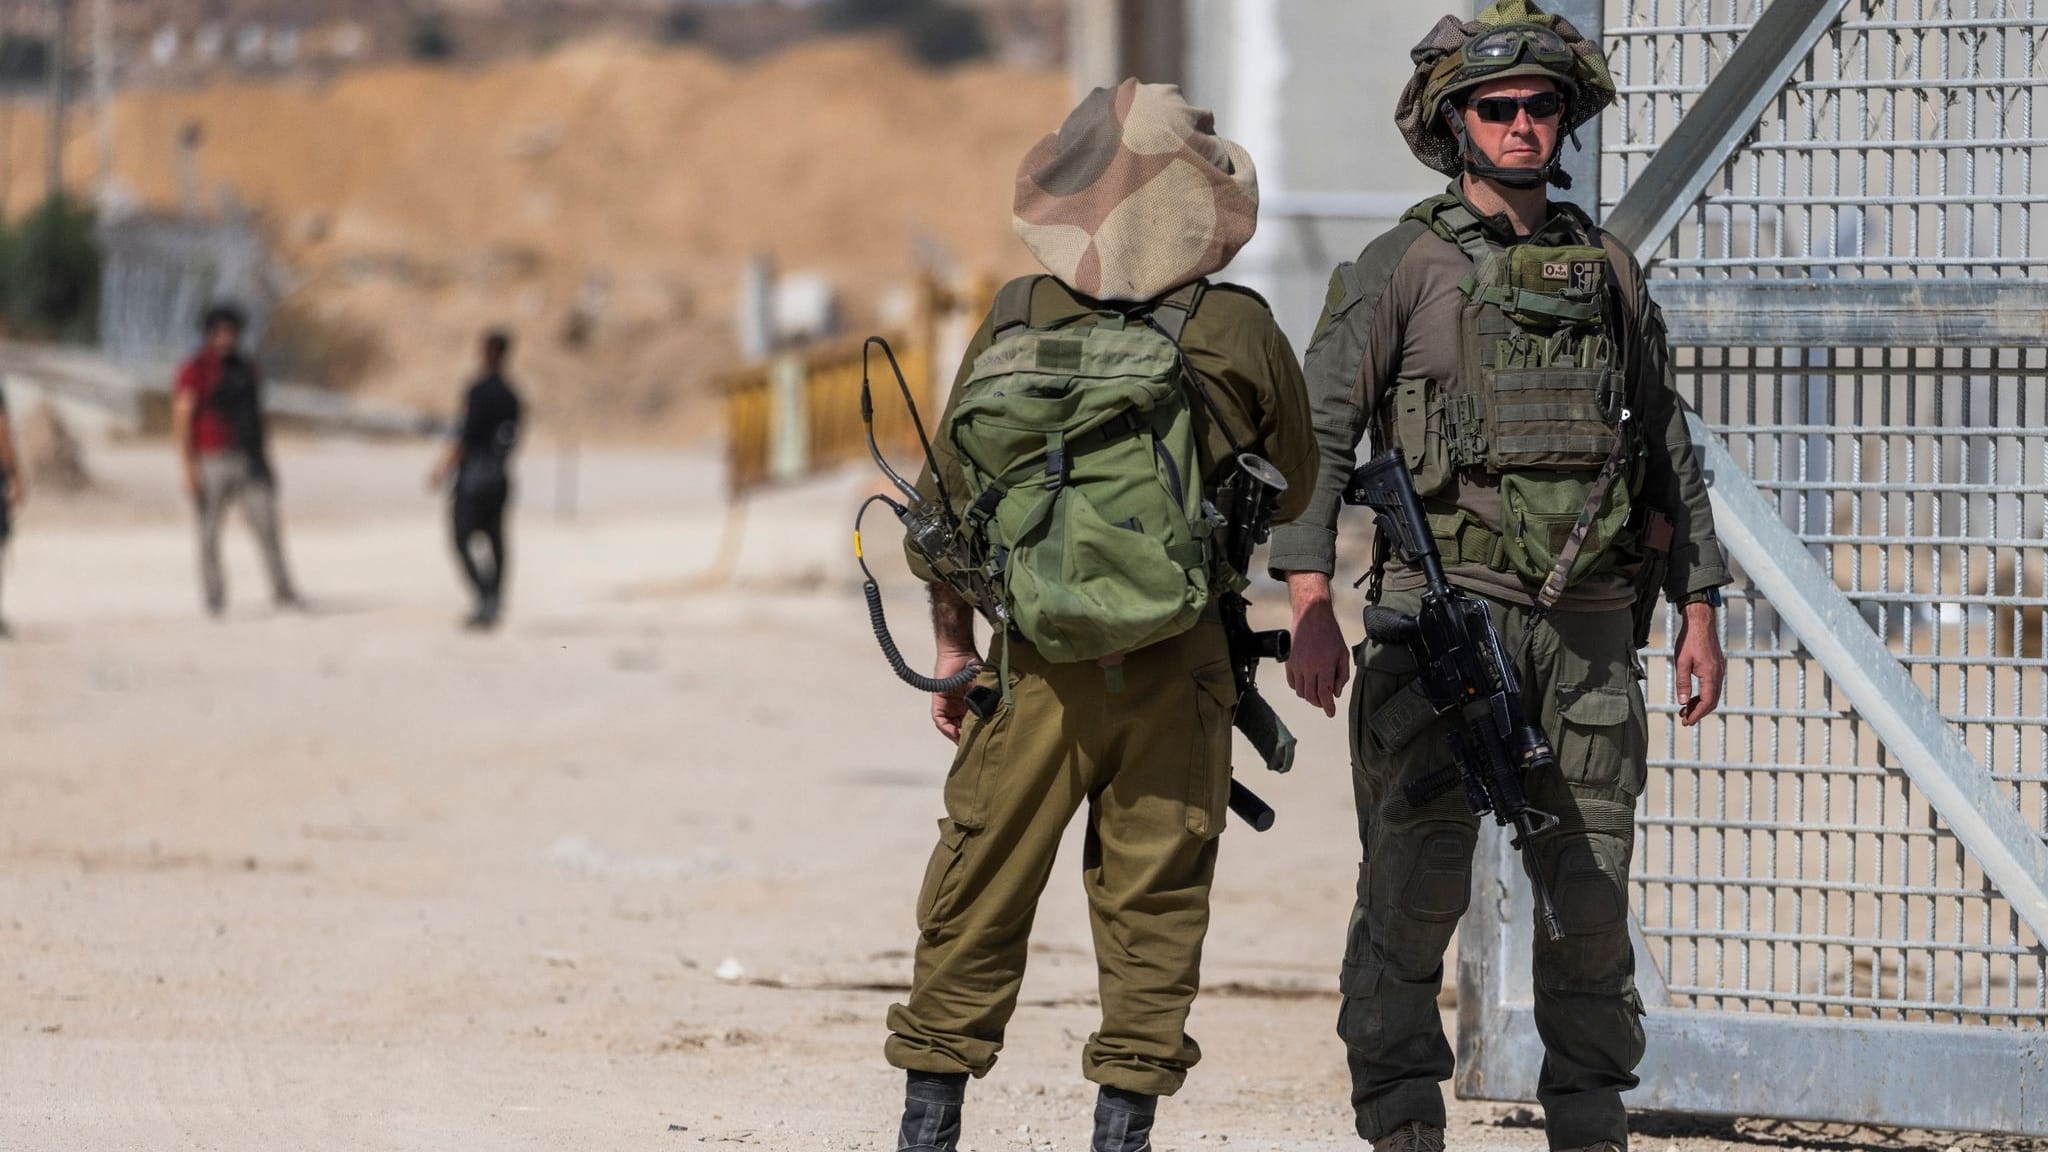 Newsblog zum Krieg in Nahost | Verwirrung um mögliche Entführung von Soldaten